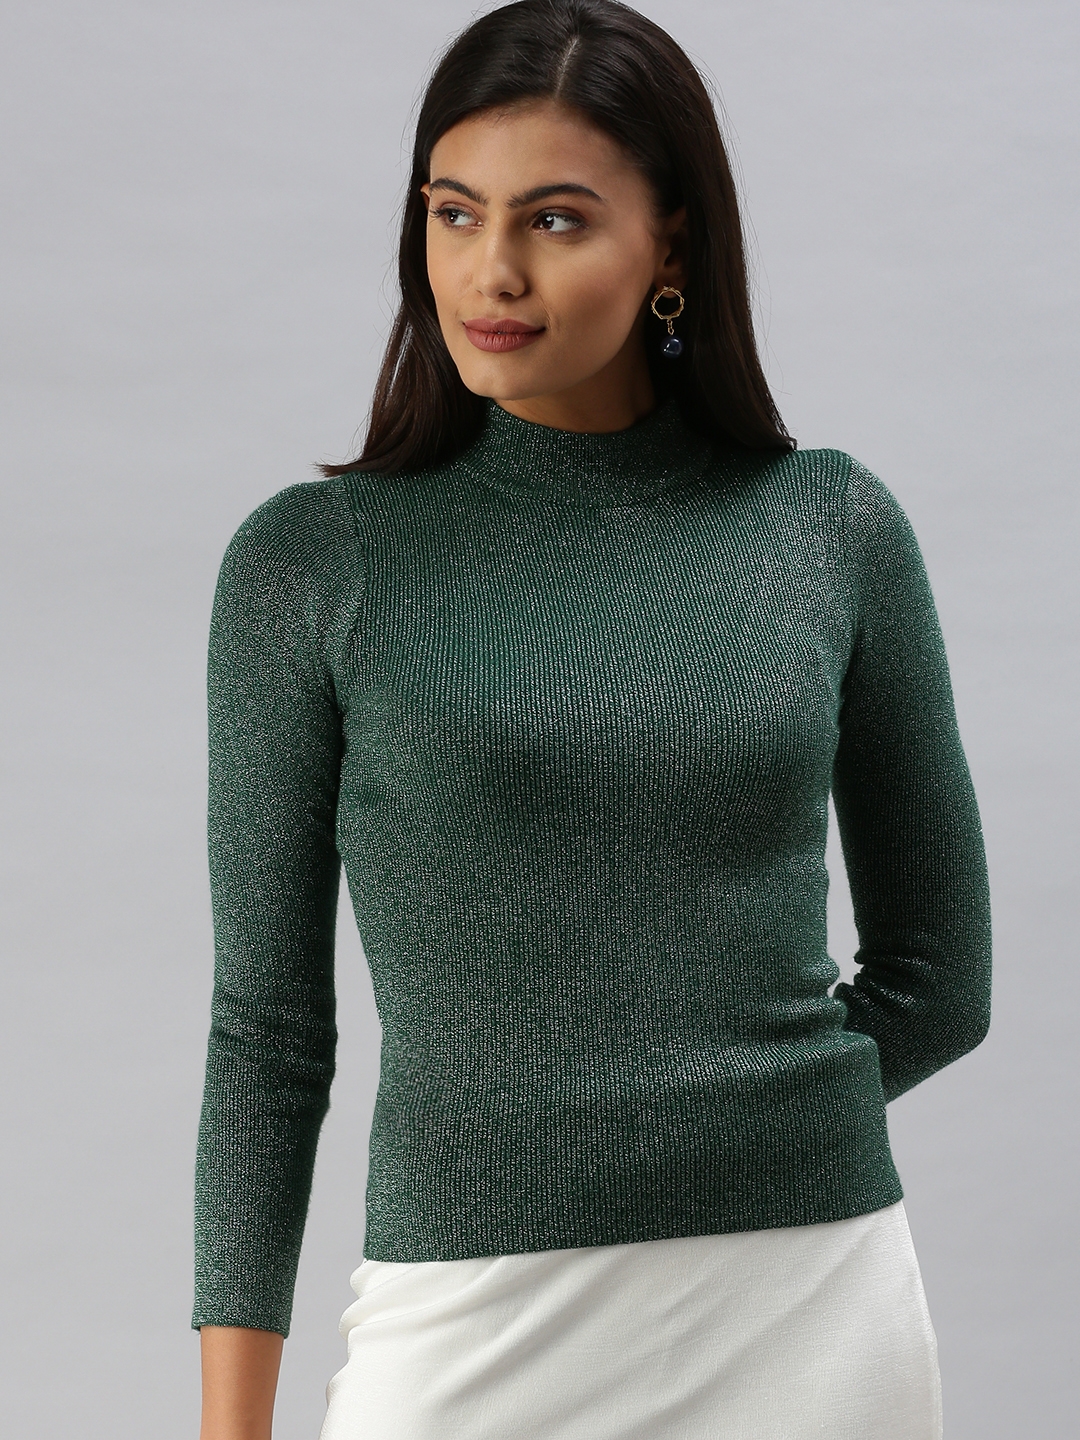 Showoff | SHOWOFF Women's High Neck Shimmer Green Regular Top